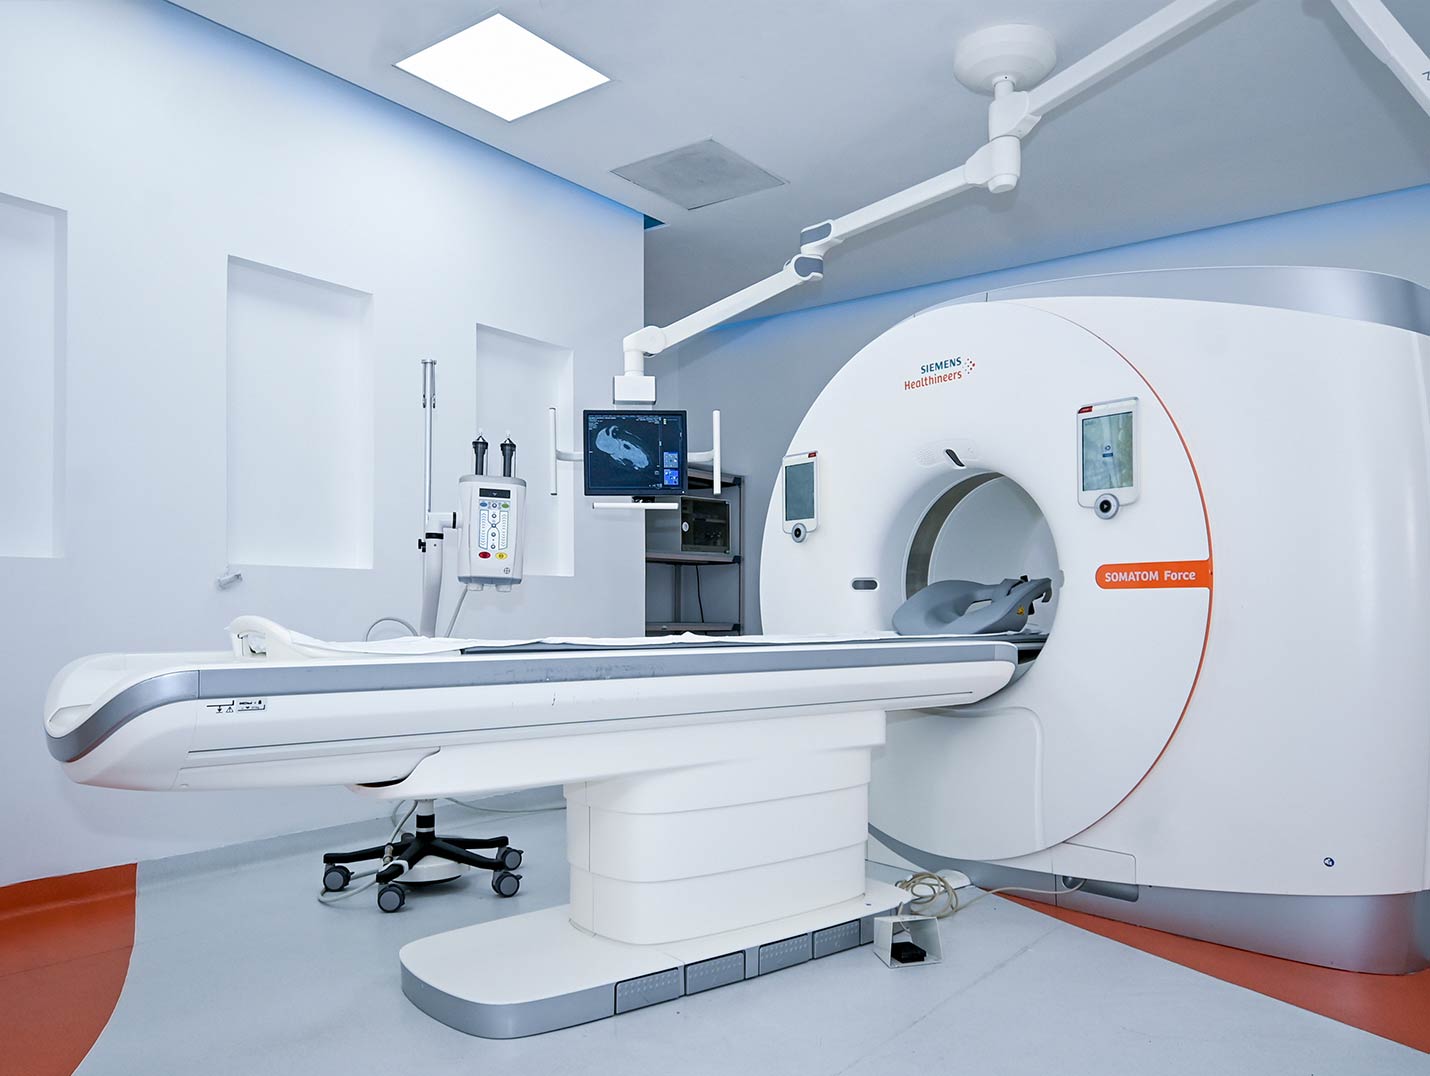 Equipo de tomografía de color blanco colocado en un cuarto de color gris con azul. 